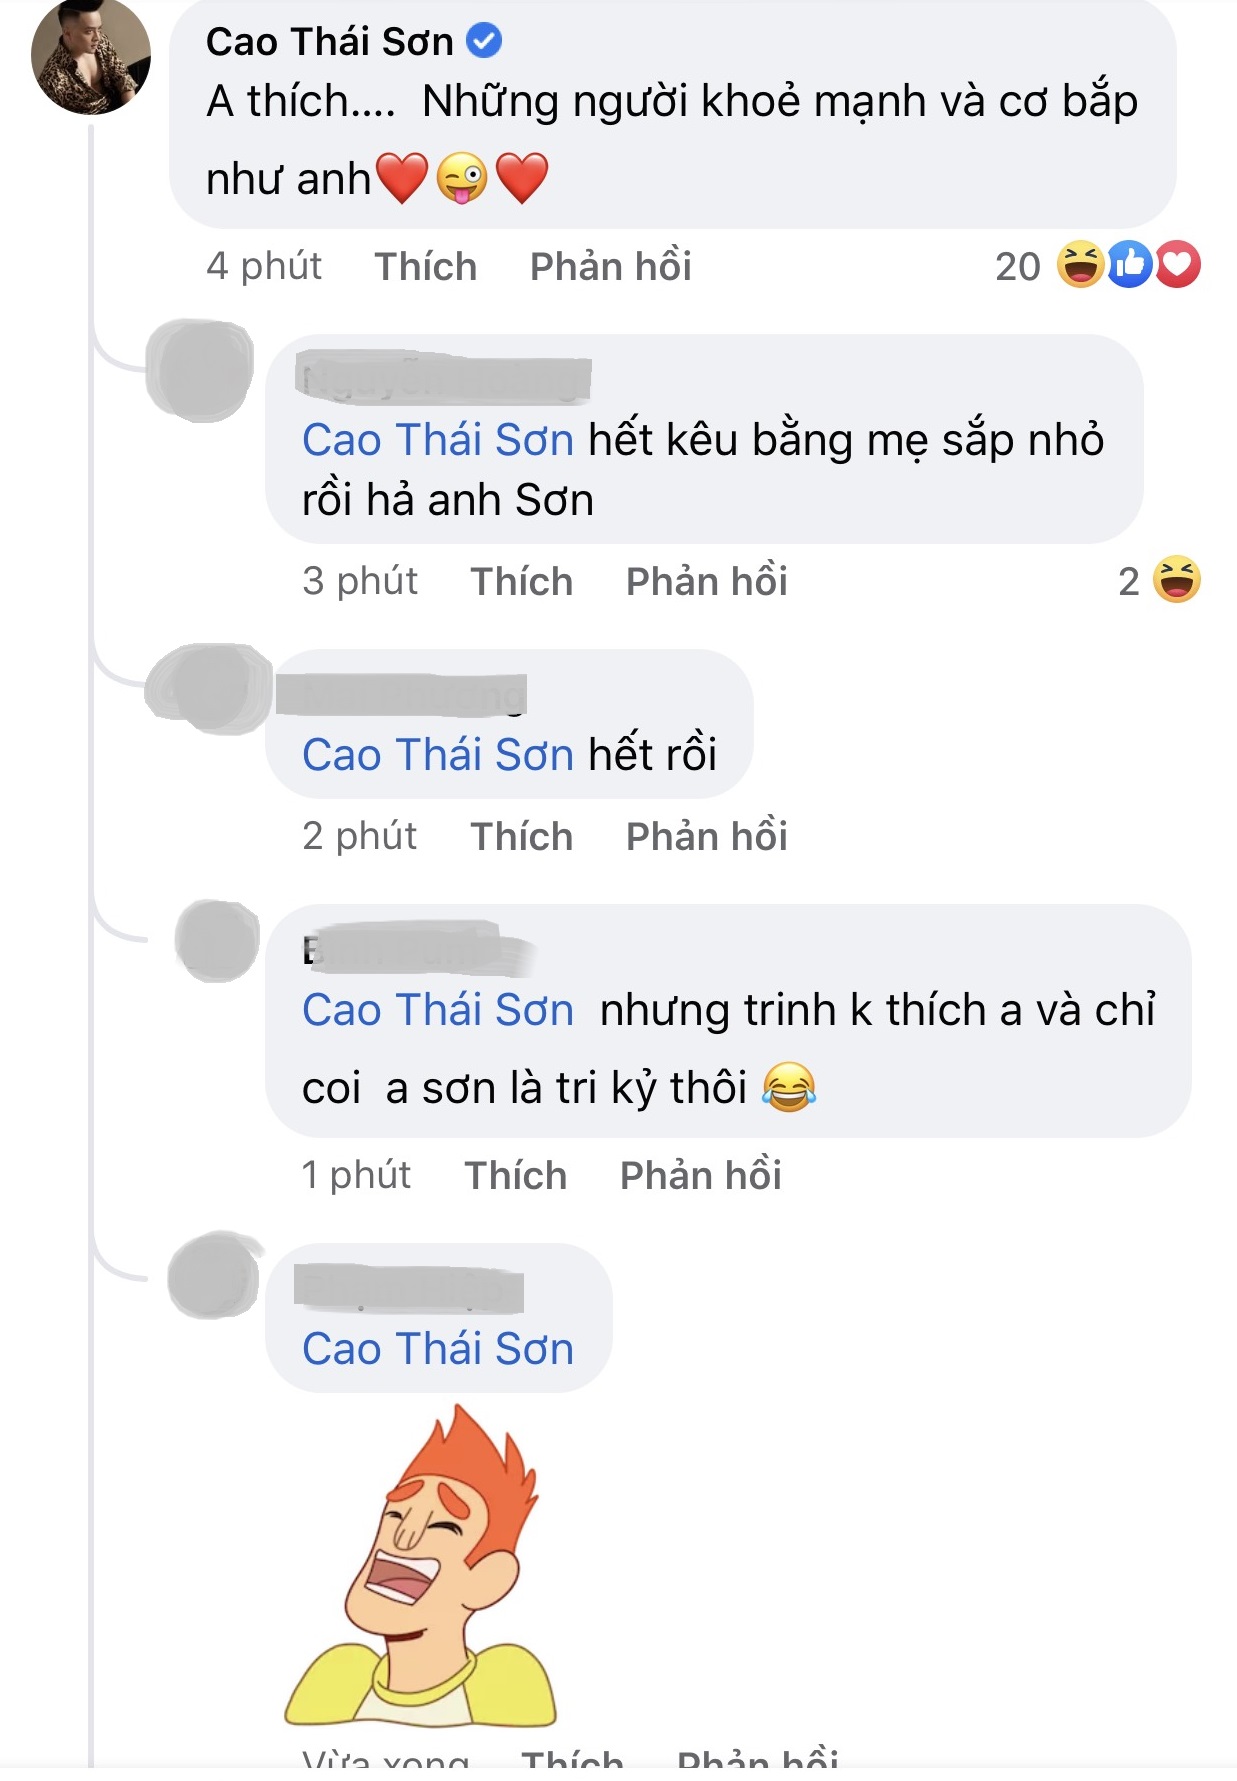 Cao Thai Son